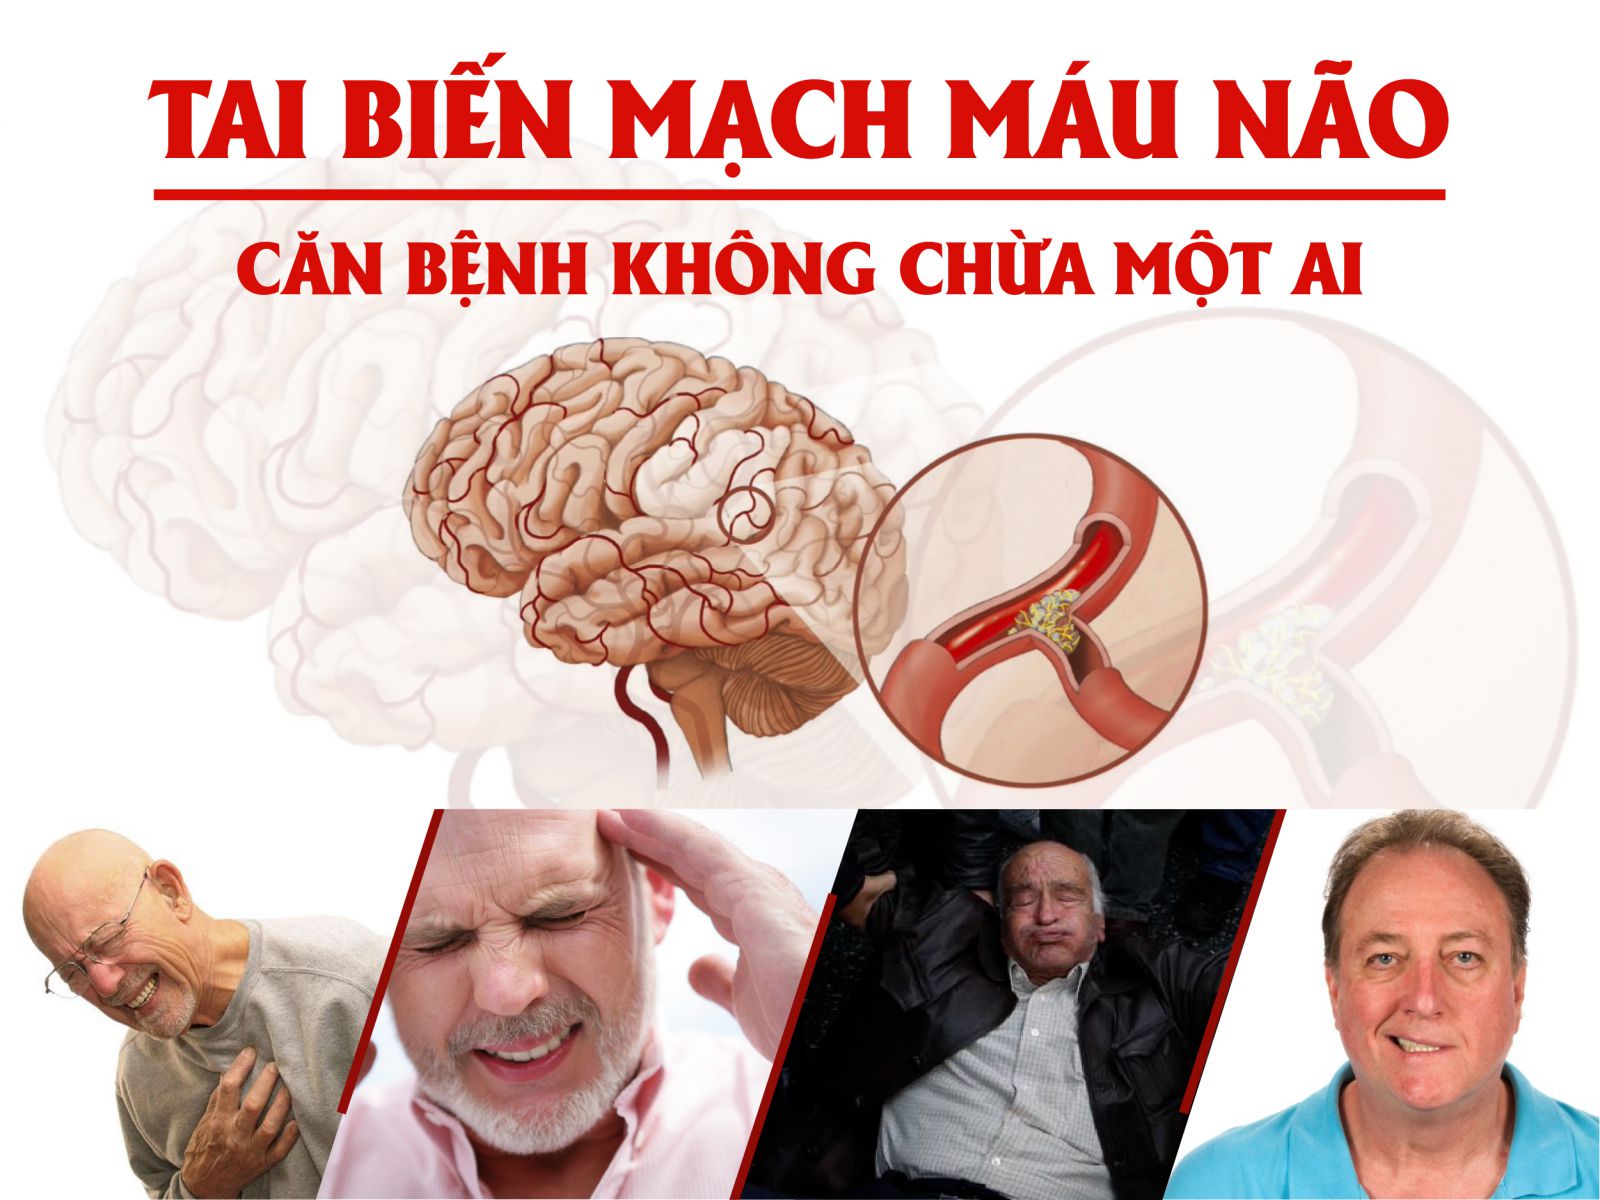 Giải phẫu động mạch não, nguy cơ tai biến mạch máu não